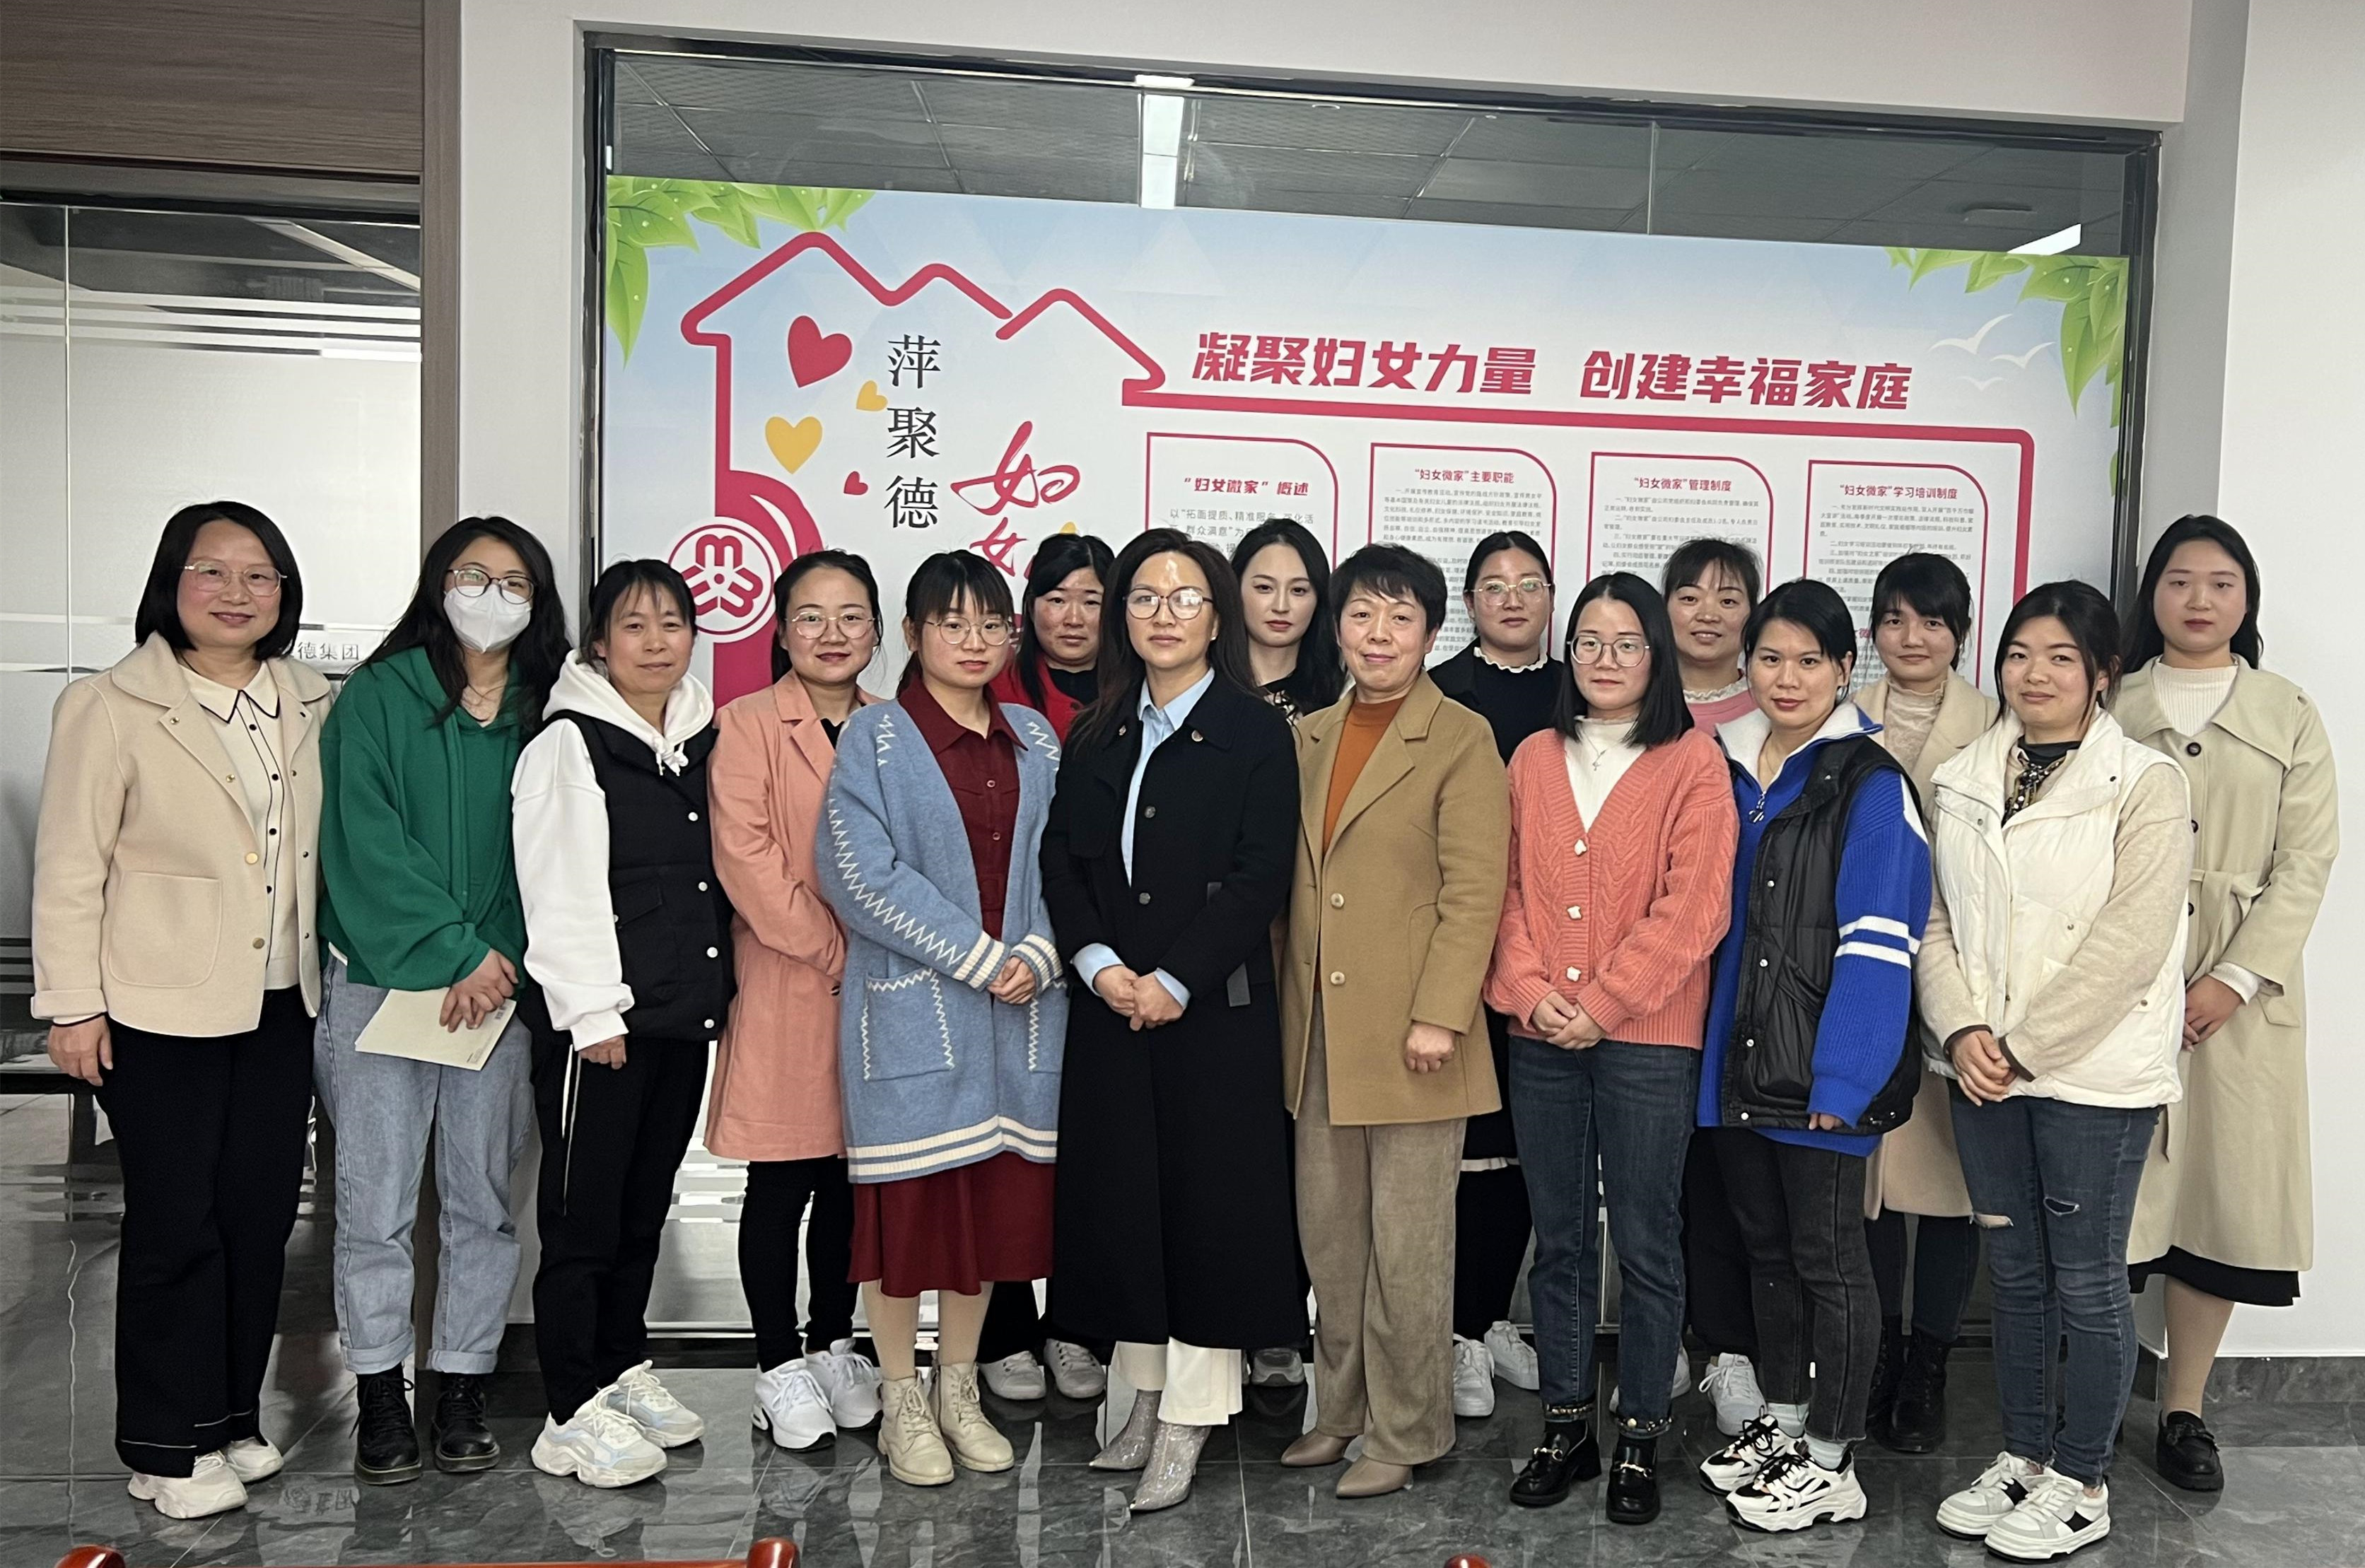 萍聚德医疗科技公司“妇女微家”获安庆市妇联表彰